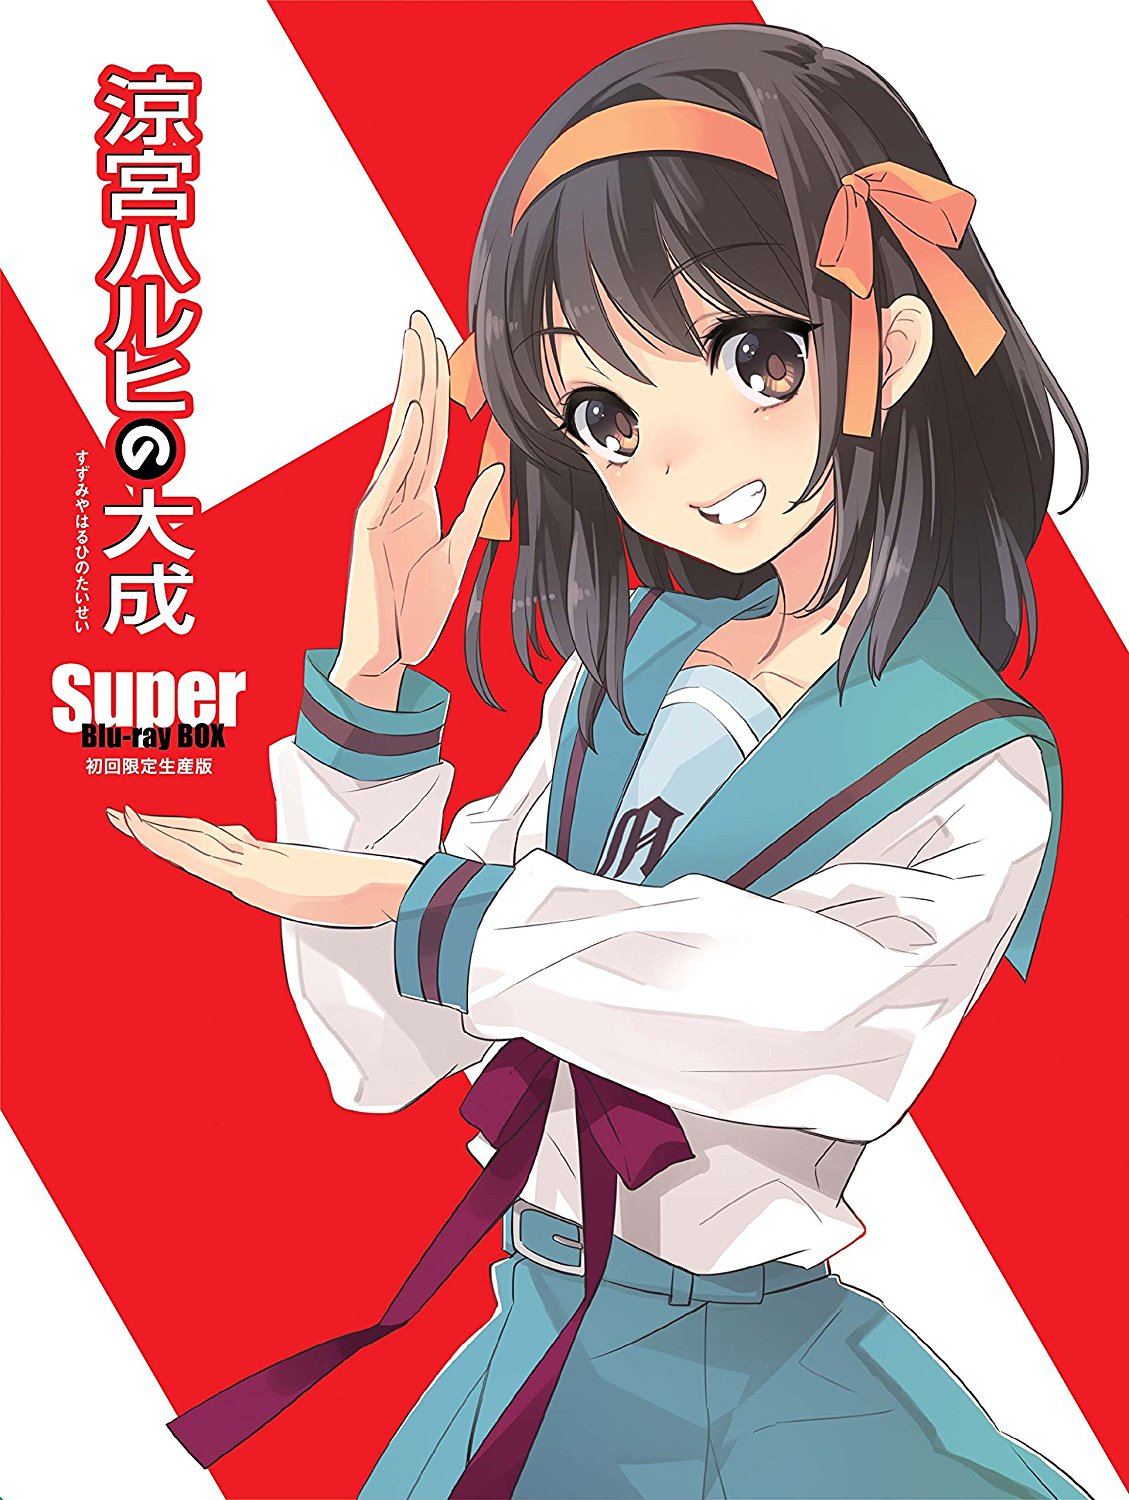 Suzumiya Haruhi no Taisei - Super Blu-ray Box [Limited Editoin]